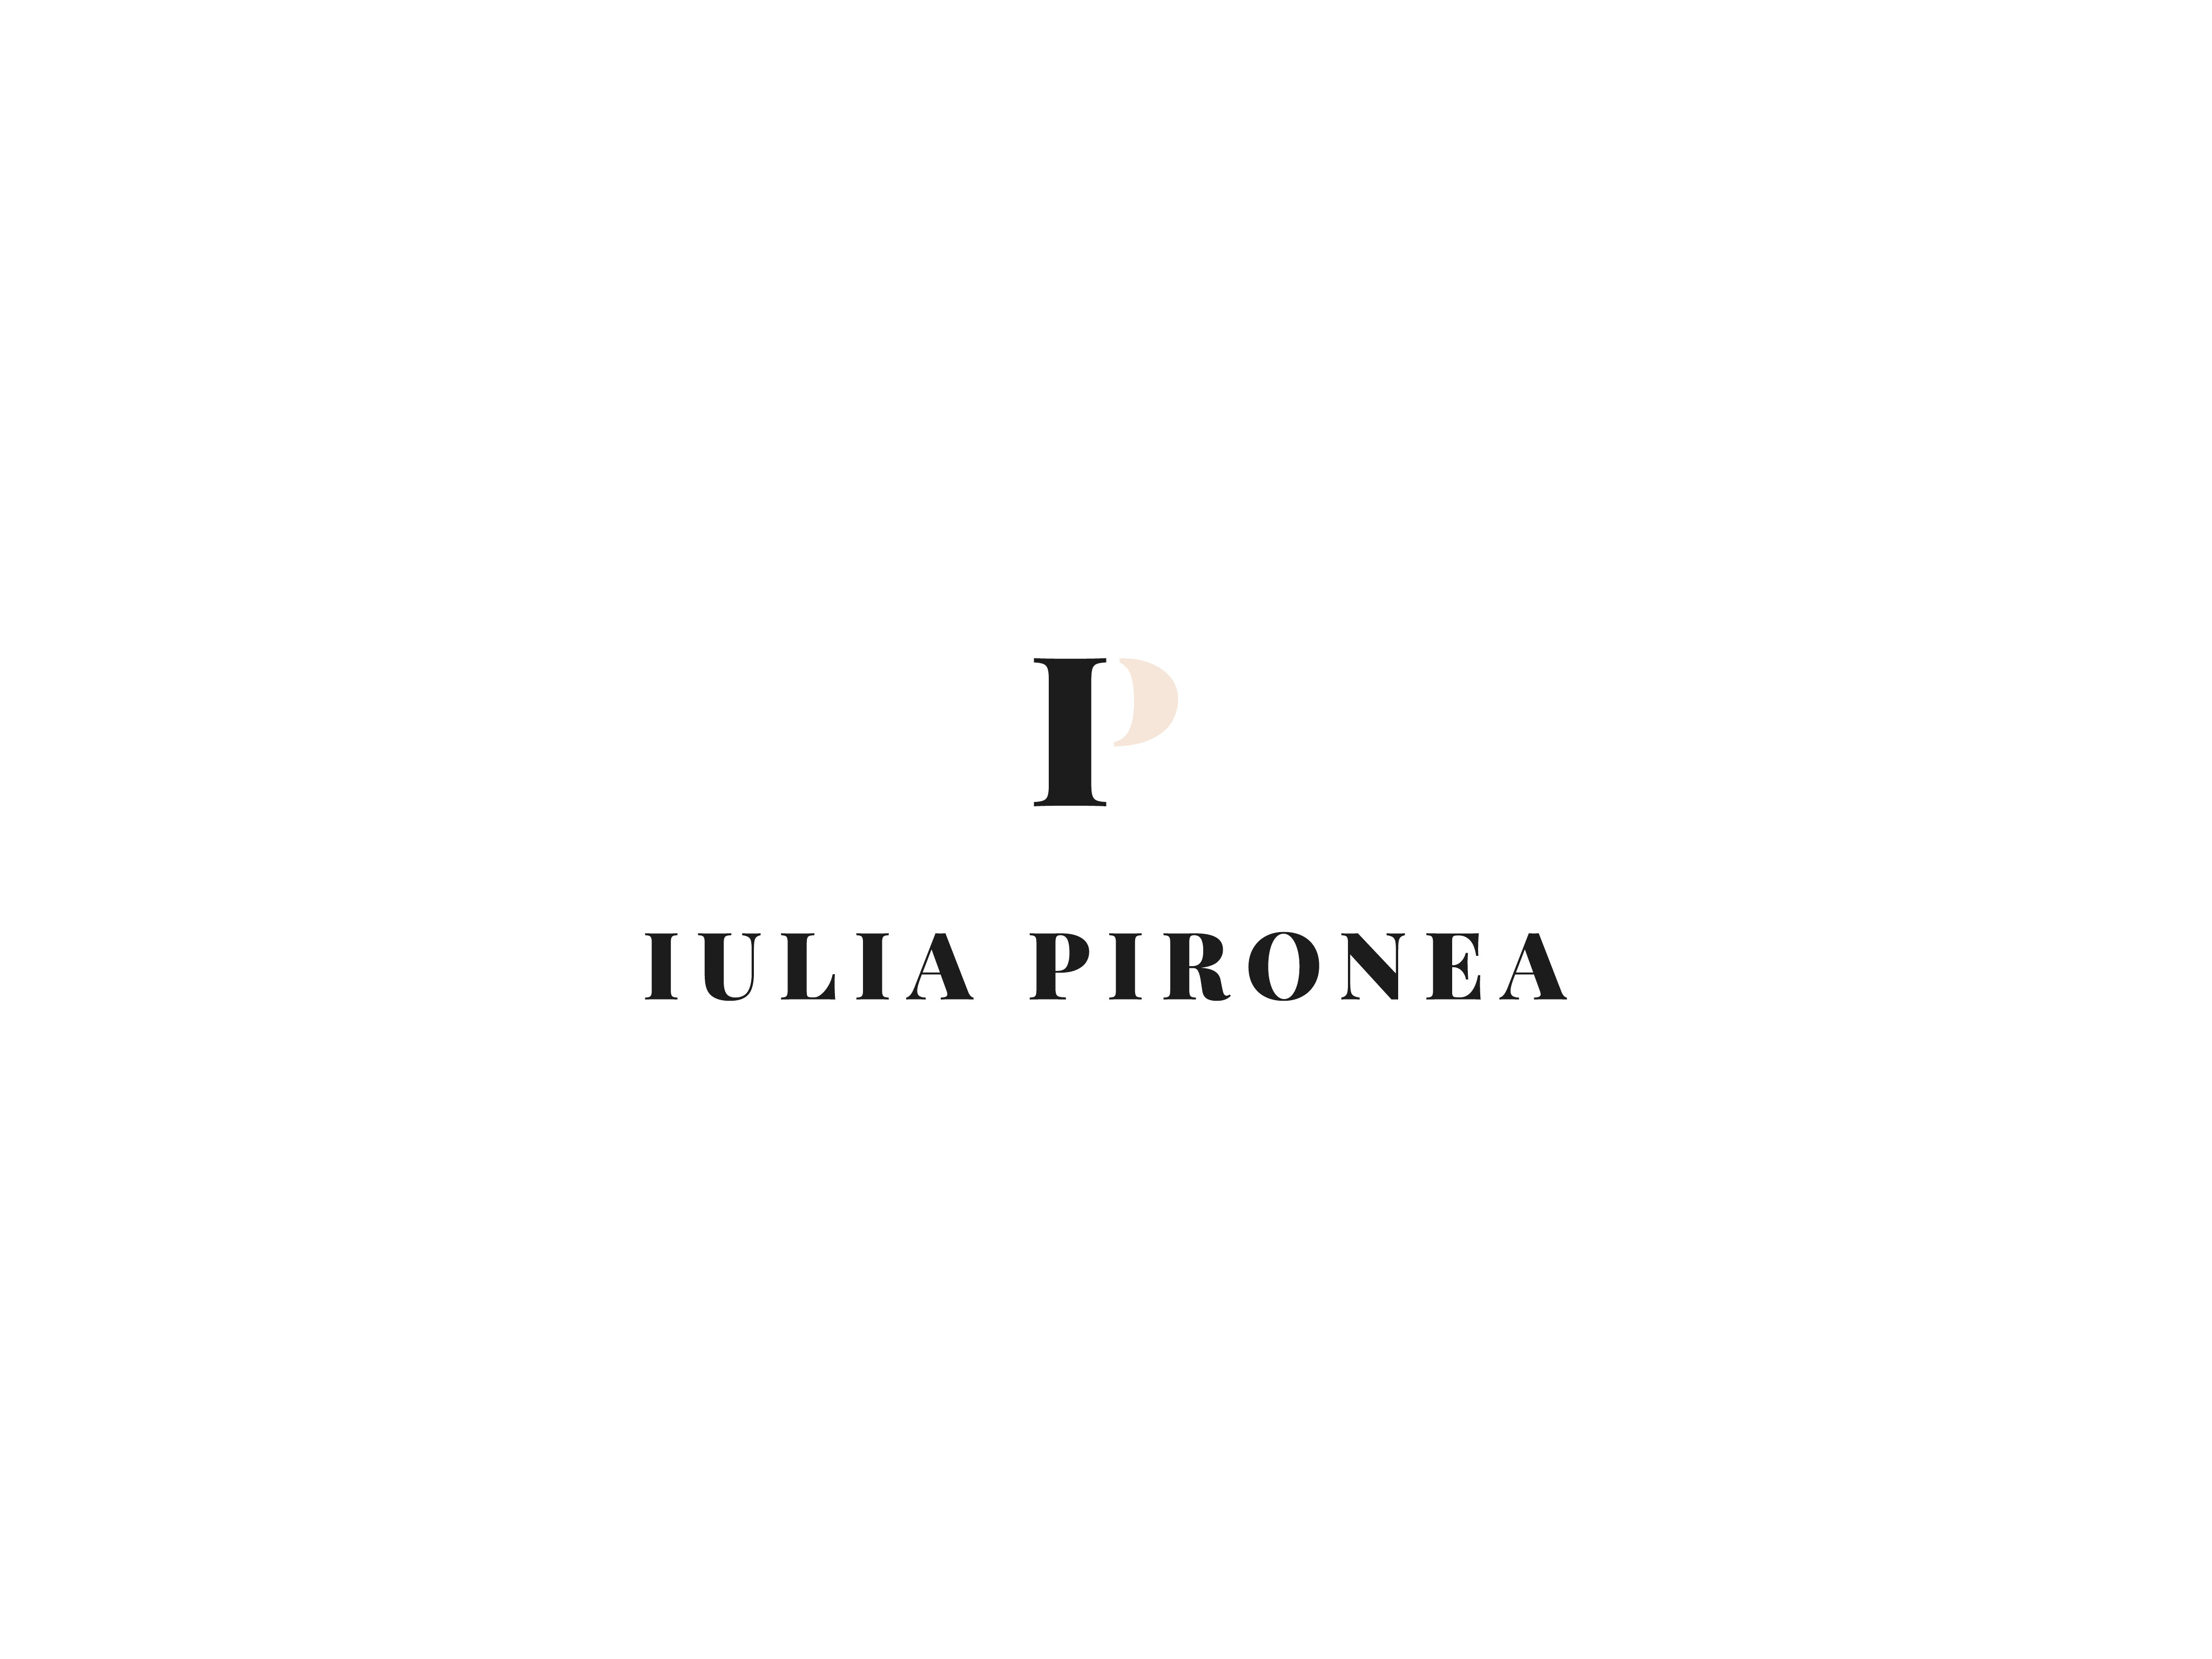 Iulia Pironea - Identidad de marca by The Bold Studio - Creative Work - $i